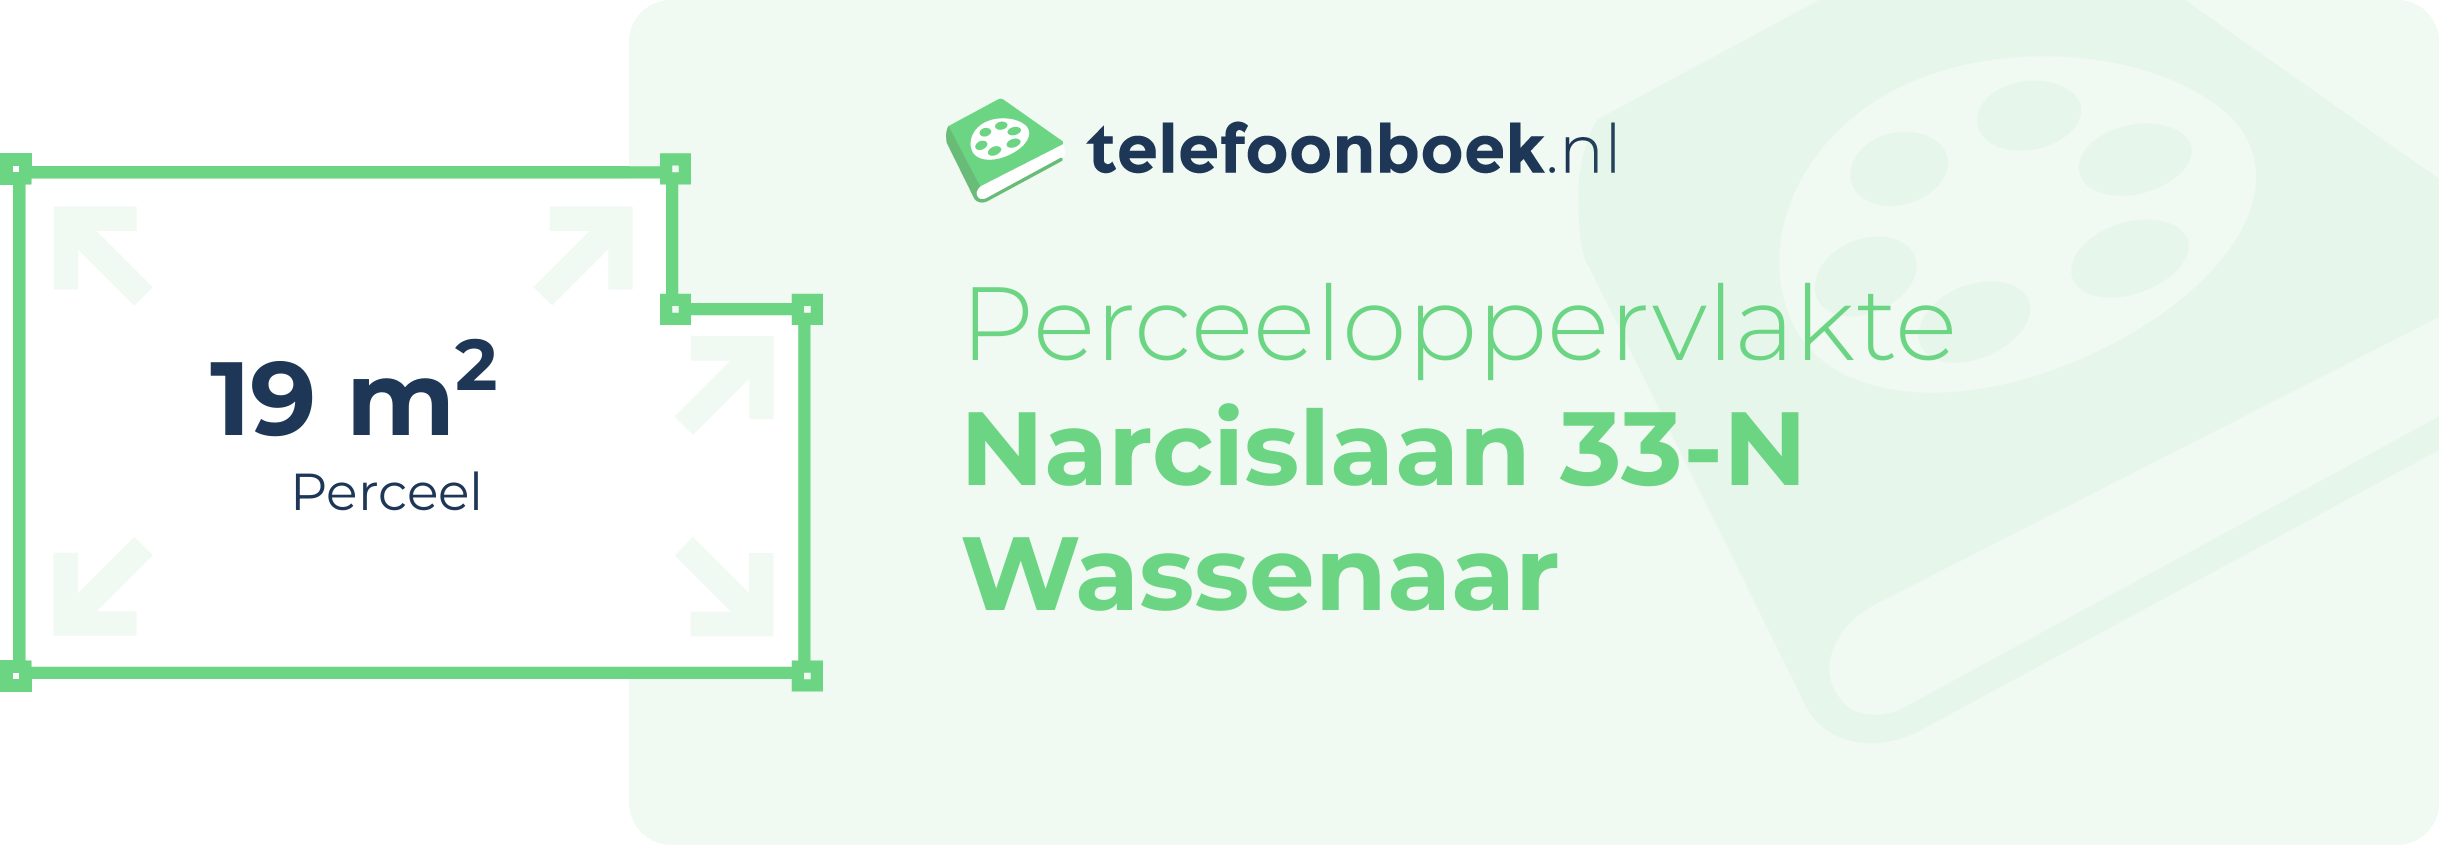 Perceeloppervlakte Narcislaan 33-N Wassenaar